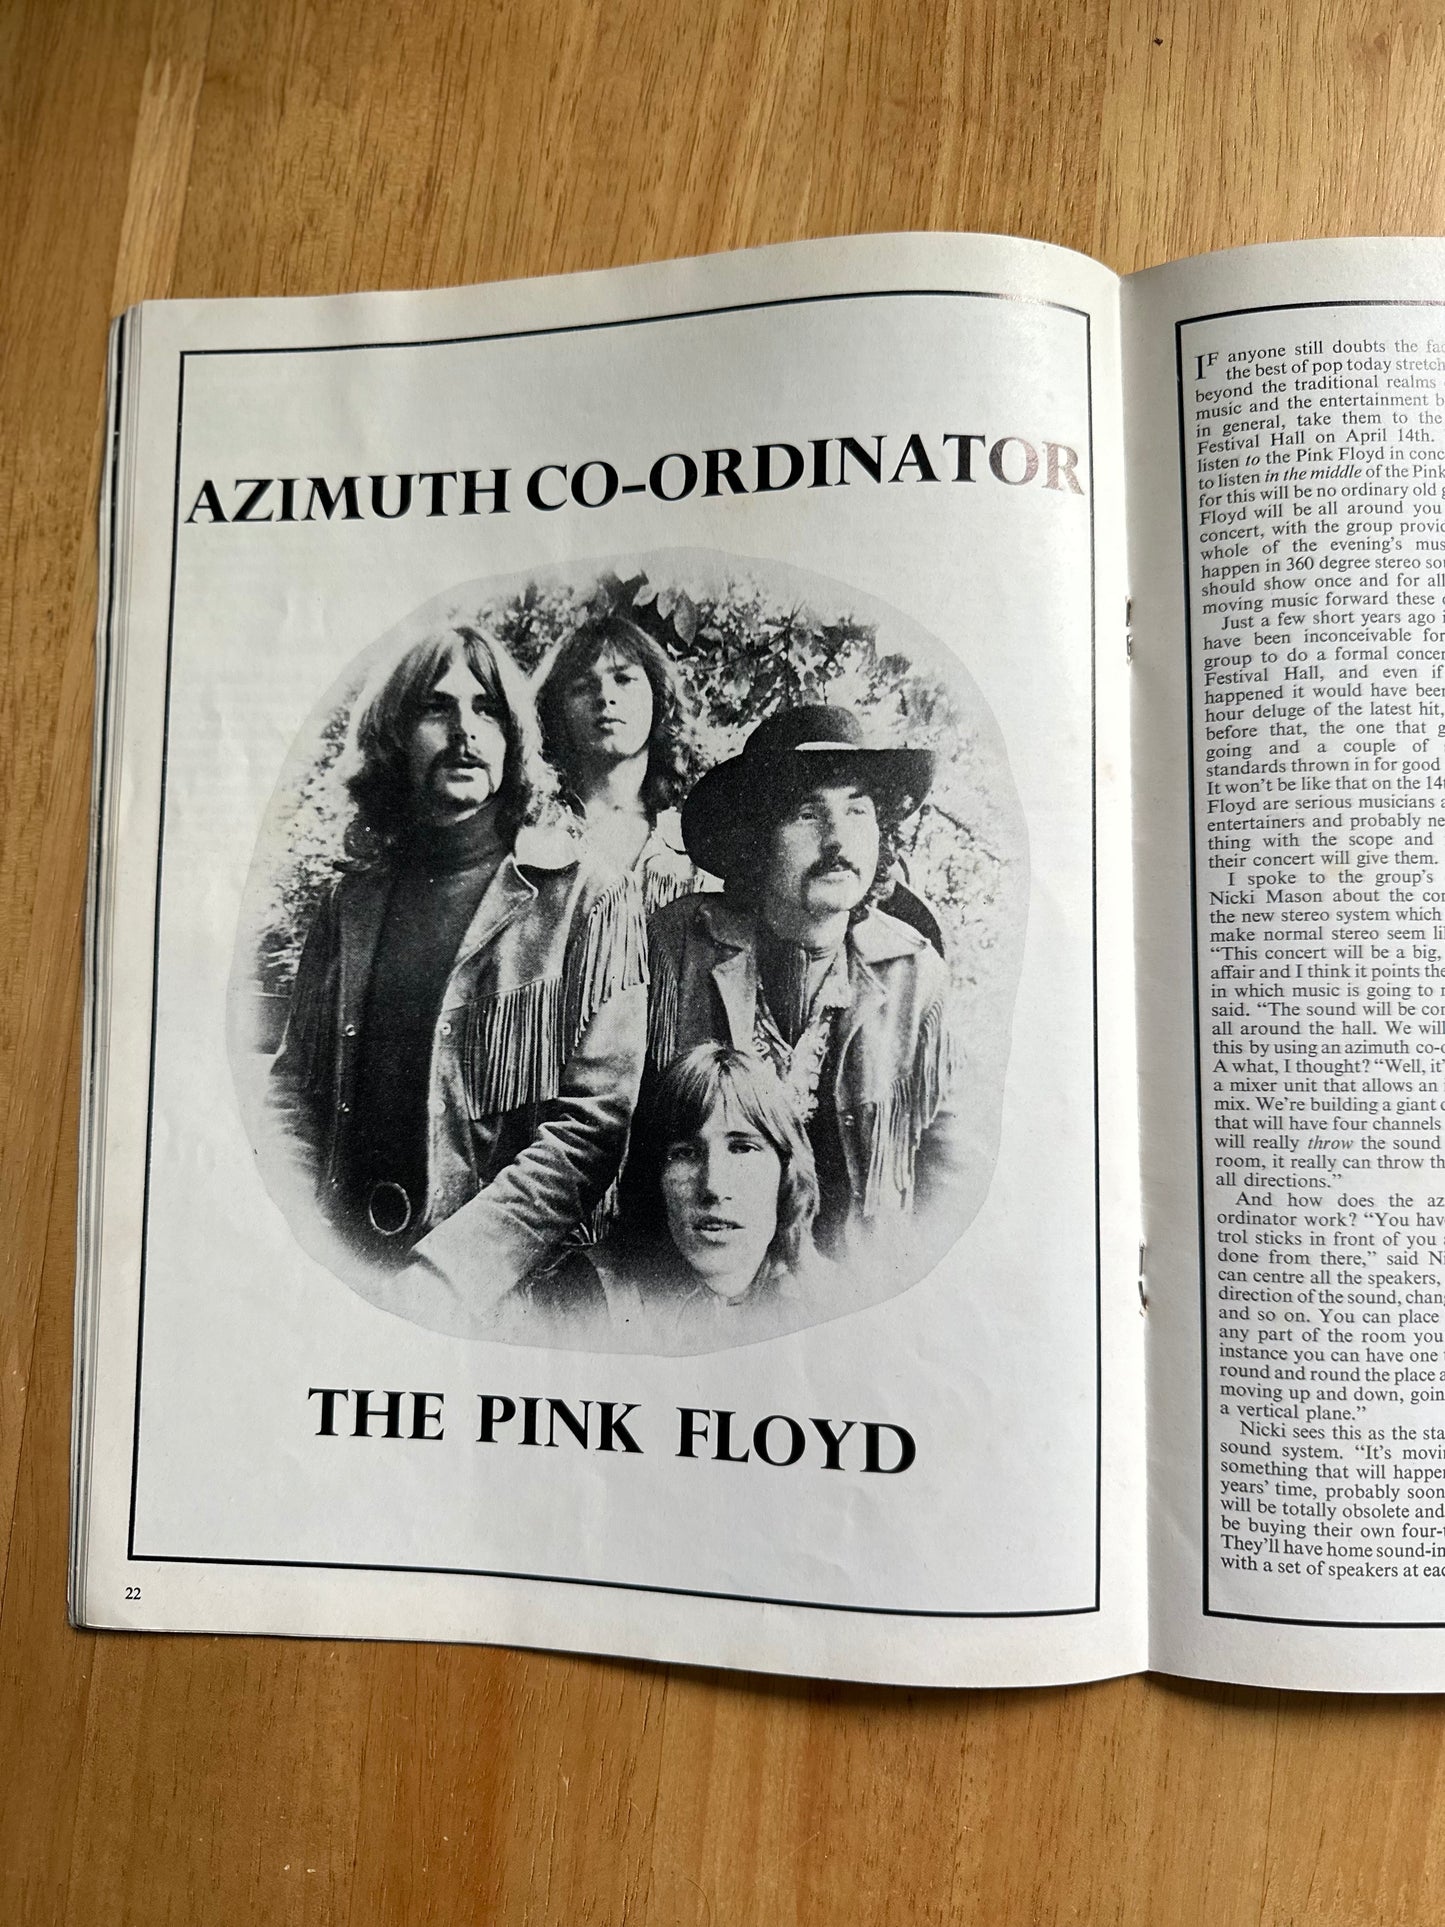 1969 April Beat Instrumental (Led Zeppelin, Pink Floyd, Stone, Fleetwood Mac)